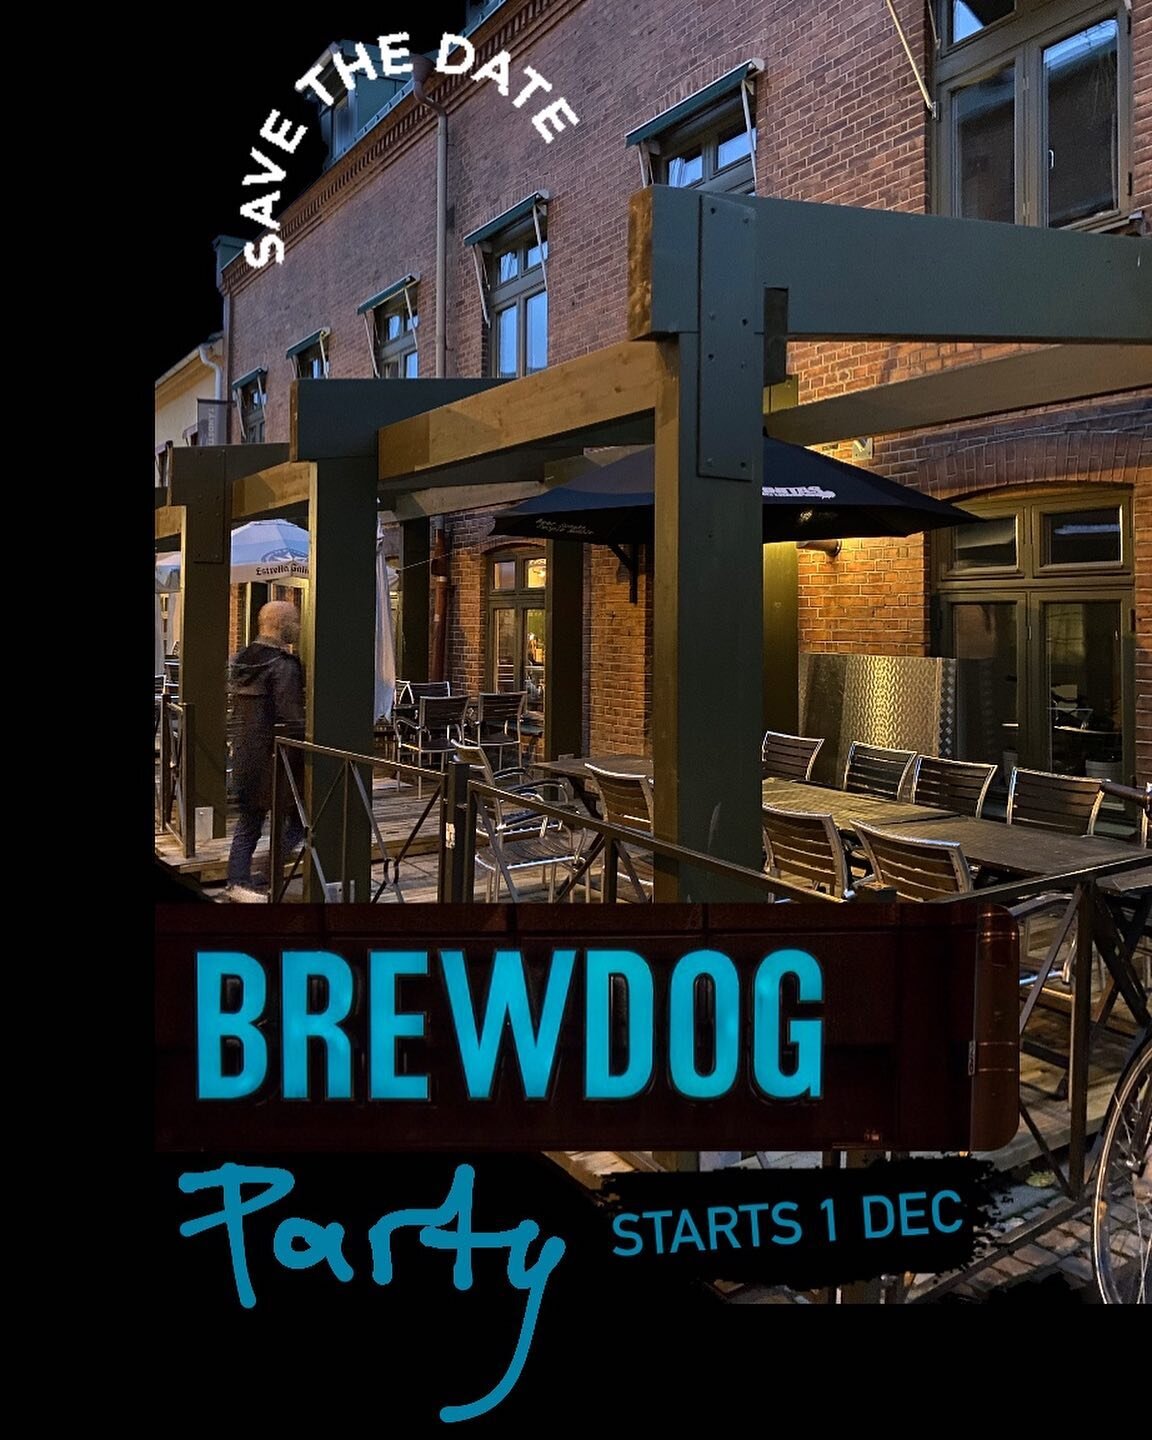 BREWDOG Party Weekend - Save the date 💥 Med start torsdag 1 december har vi Brewdog p&aring; tavlan, i kylen och en massa merch.

Tagga polarn som inte f&aring;r missa! ⚡️

#&ouml;lprovning #&ouml;l #&ouml;lv&auml;nner #&ouml;lbryggare #humledryck #